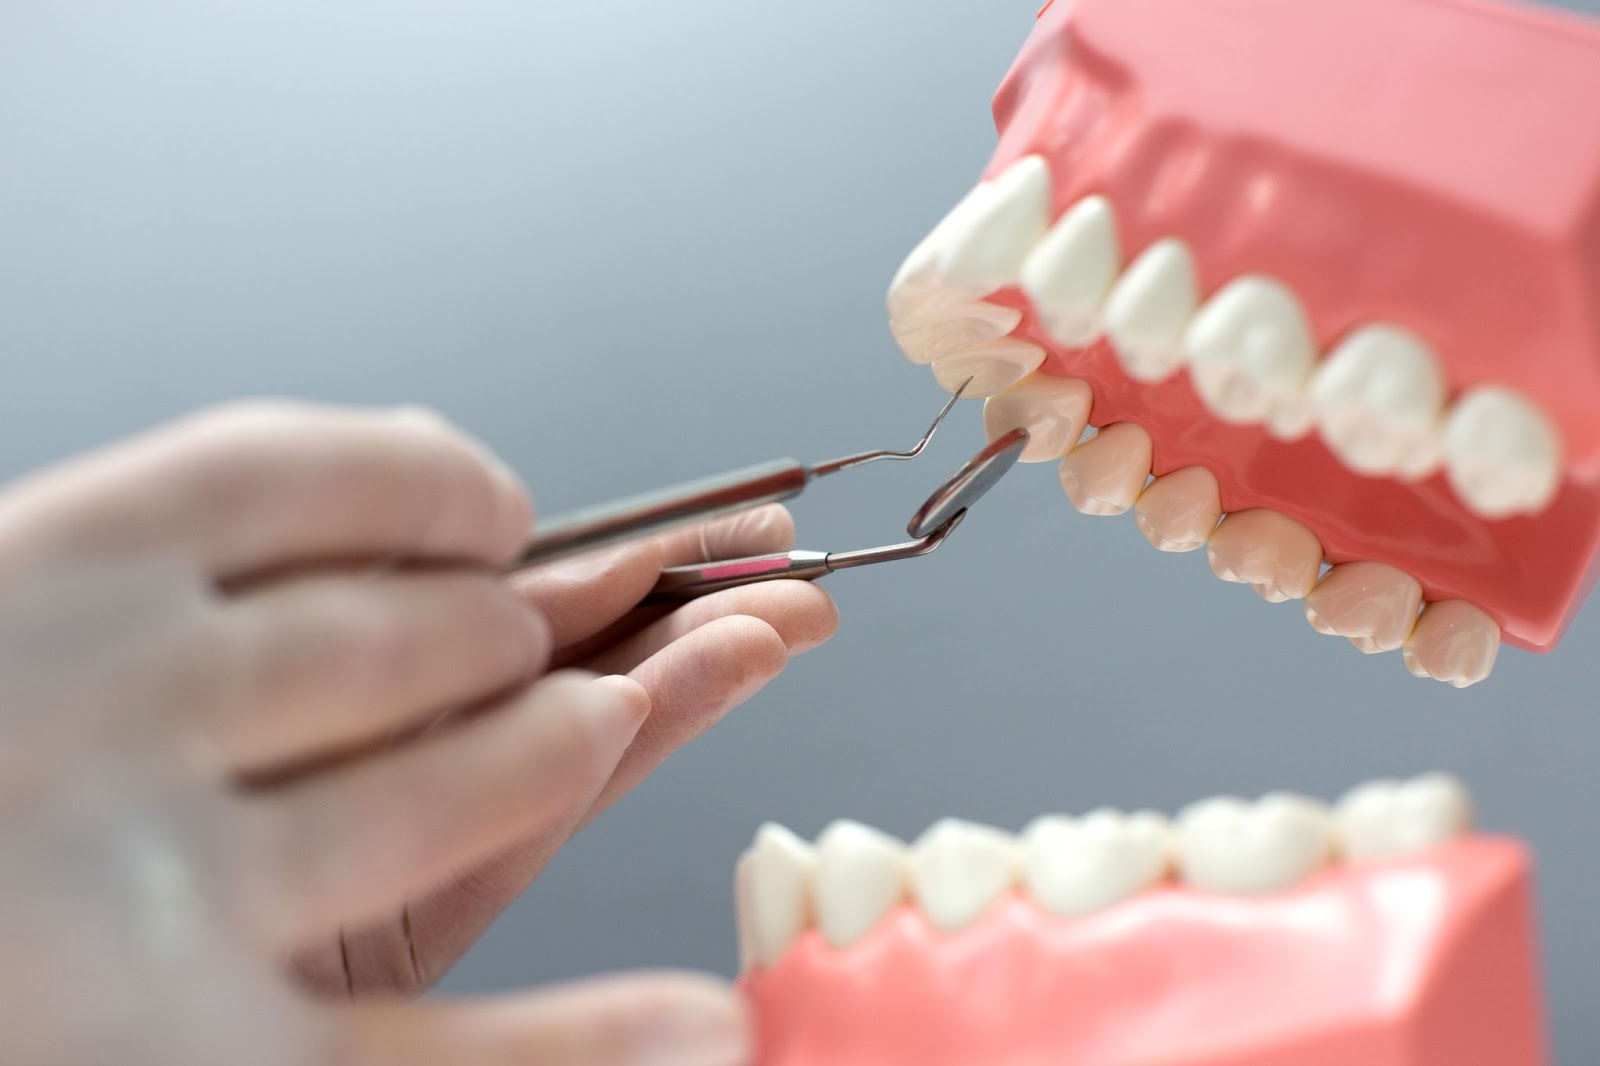 Prix moyen d’un implant dentaire à travers la France  Comparaisons Régionales